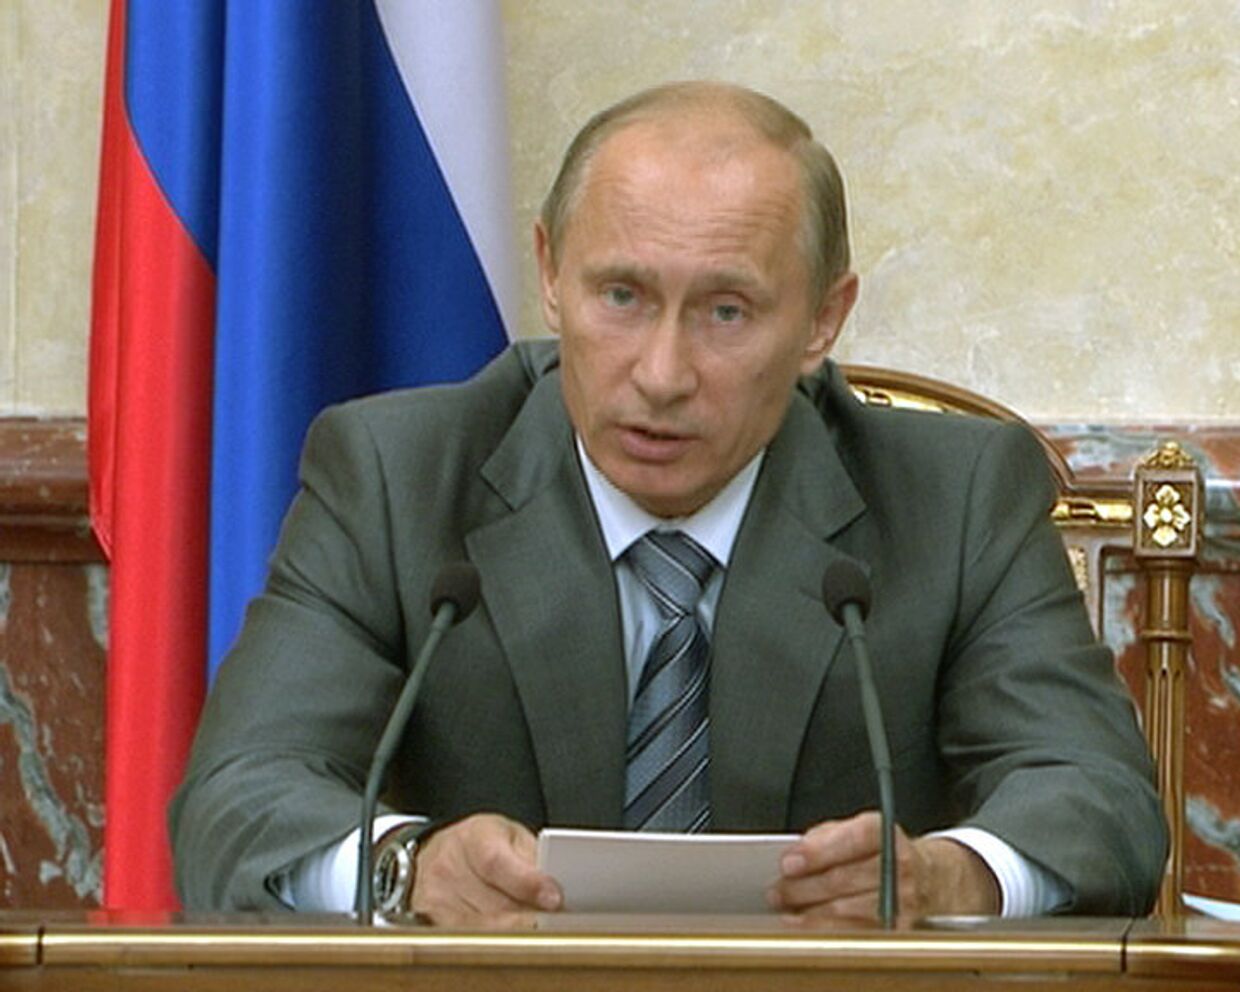 Путин обещает рост пенсий и частичный пересмотр налогов в 2011 году